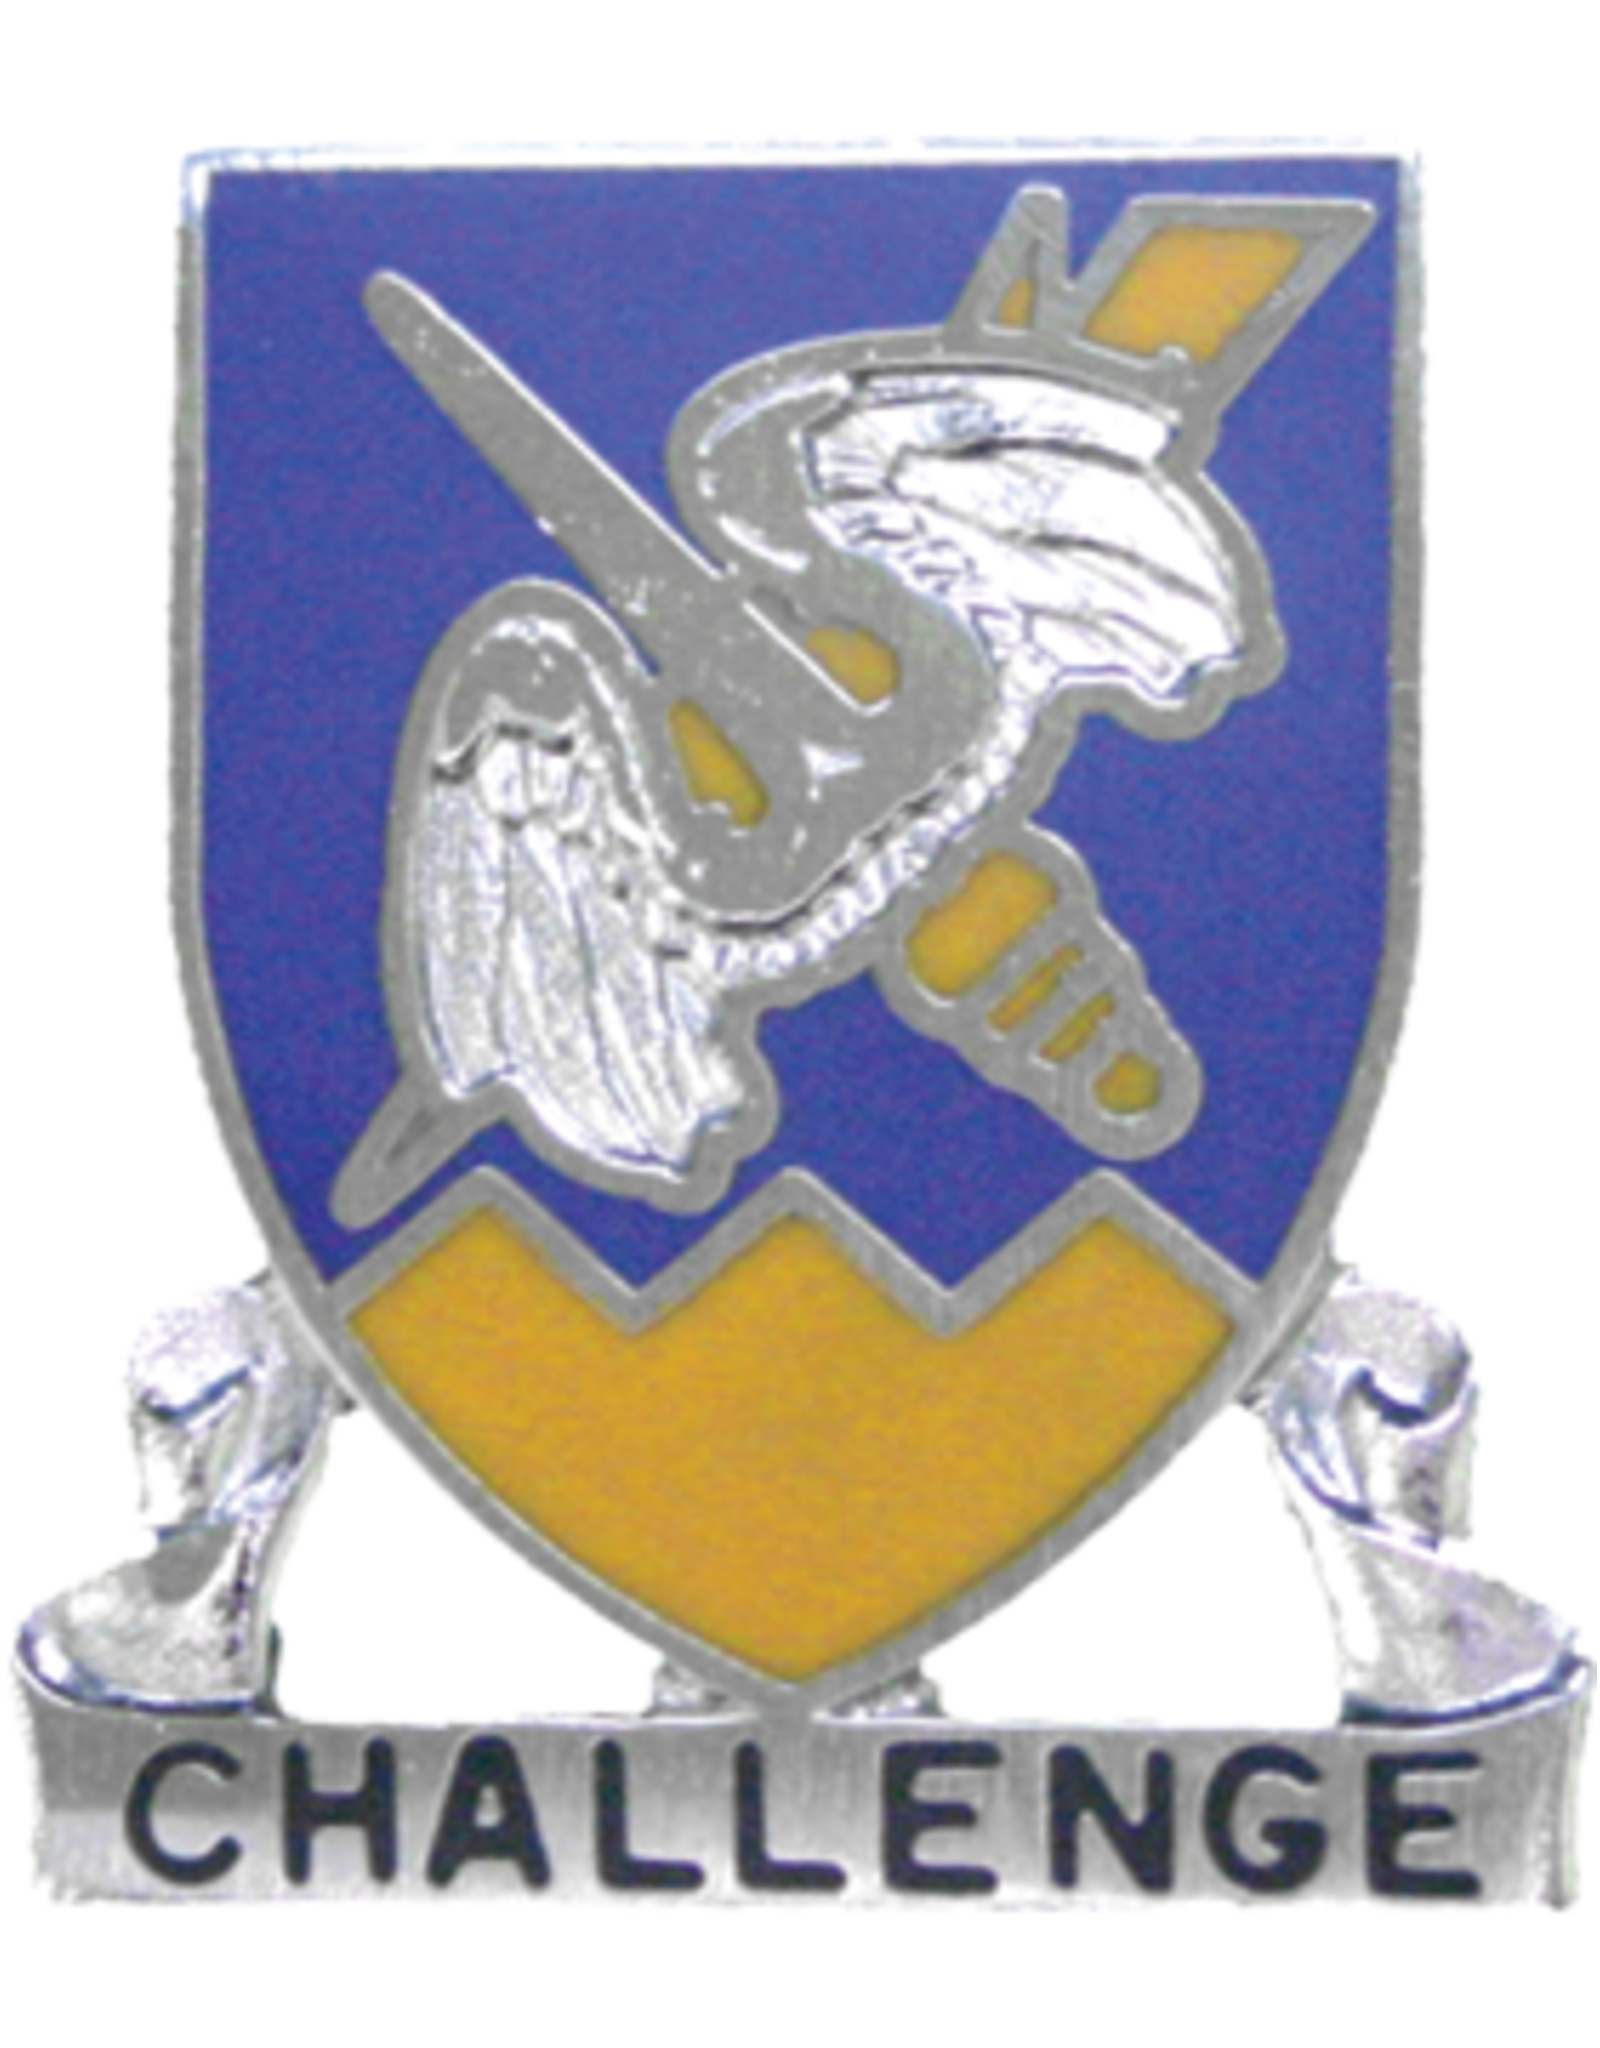 158th Aviation Crest, Challenge